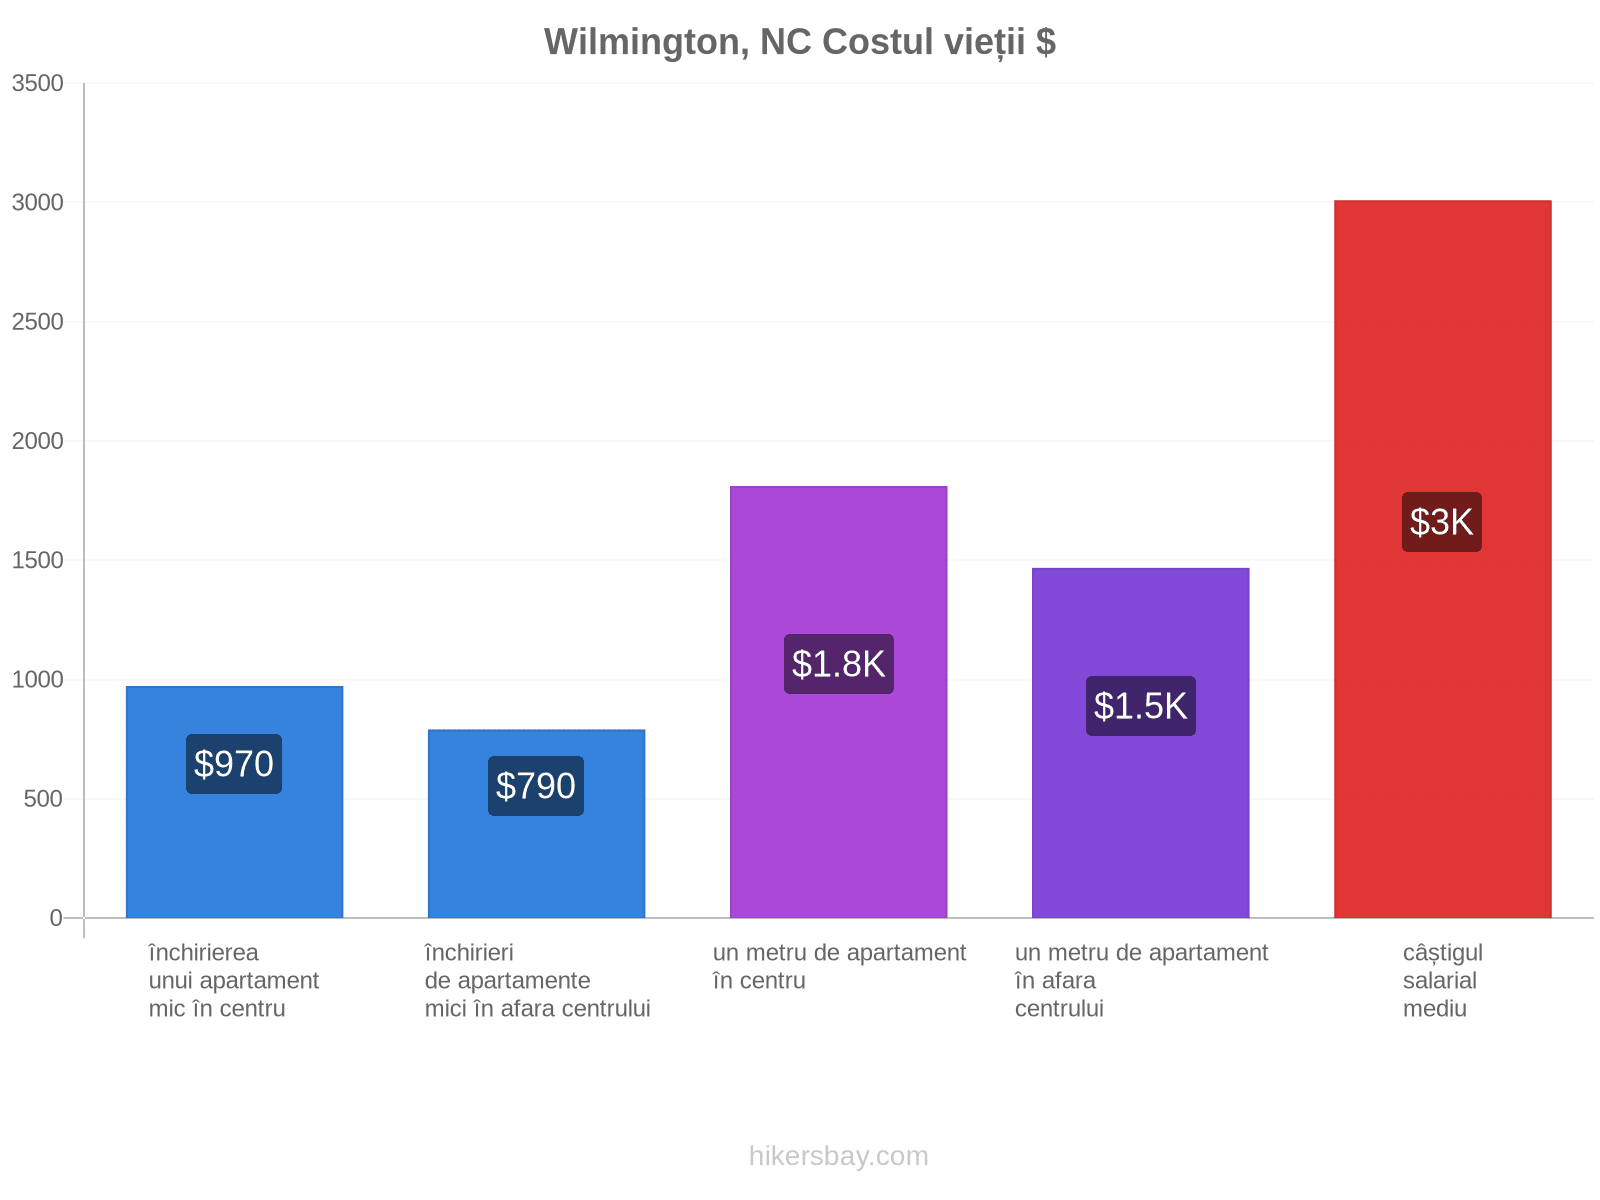 Wilmington, NC costul vieții hikersbay.com